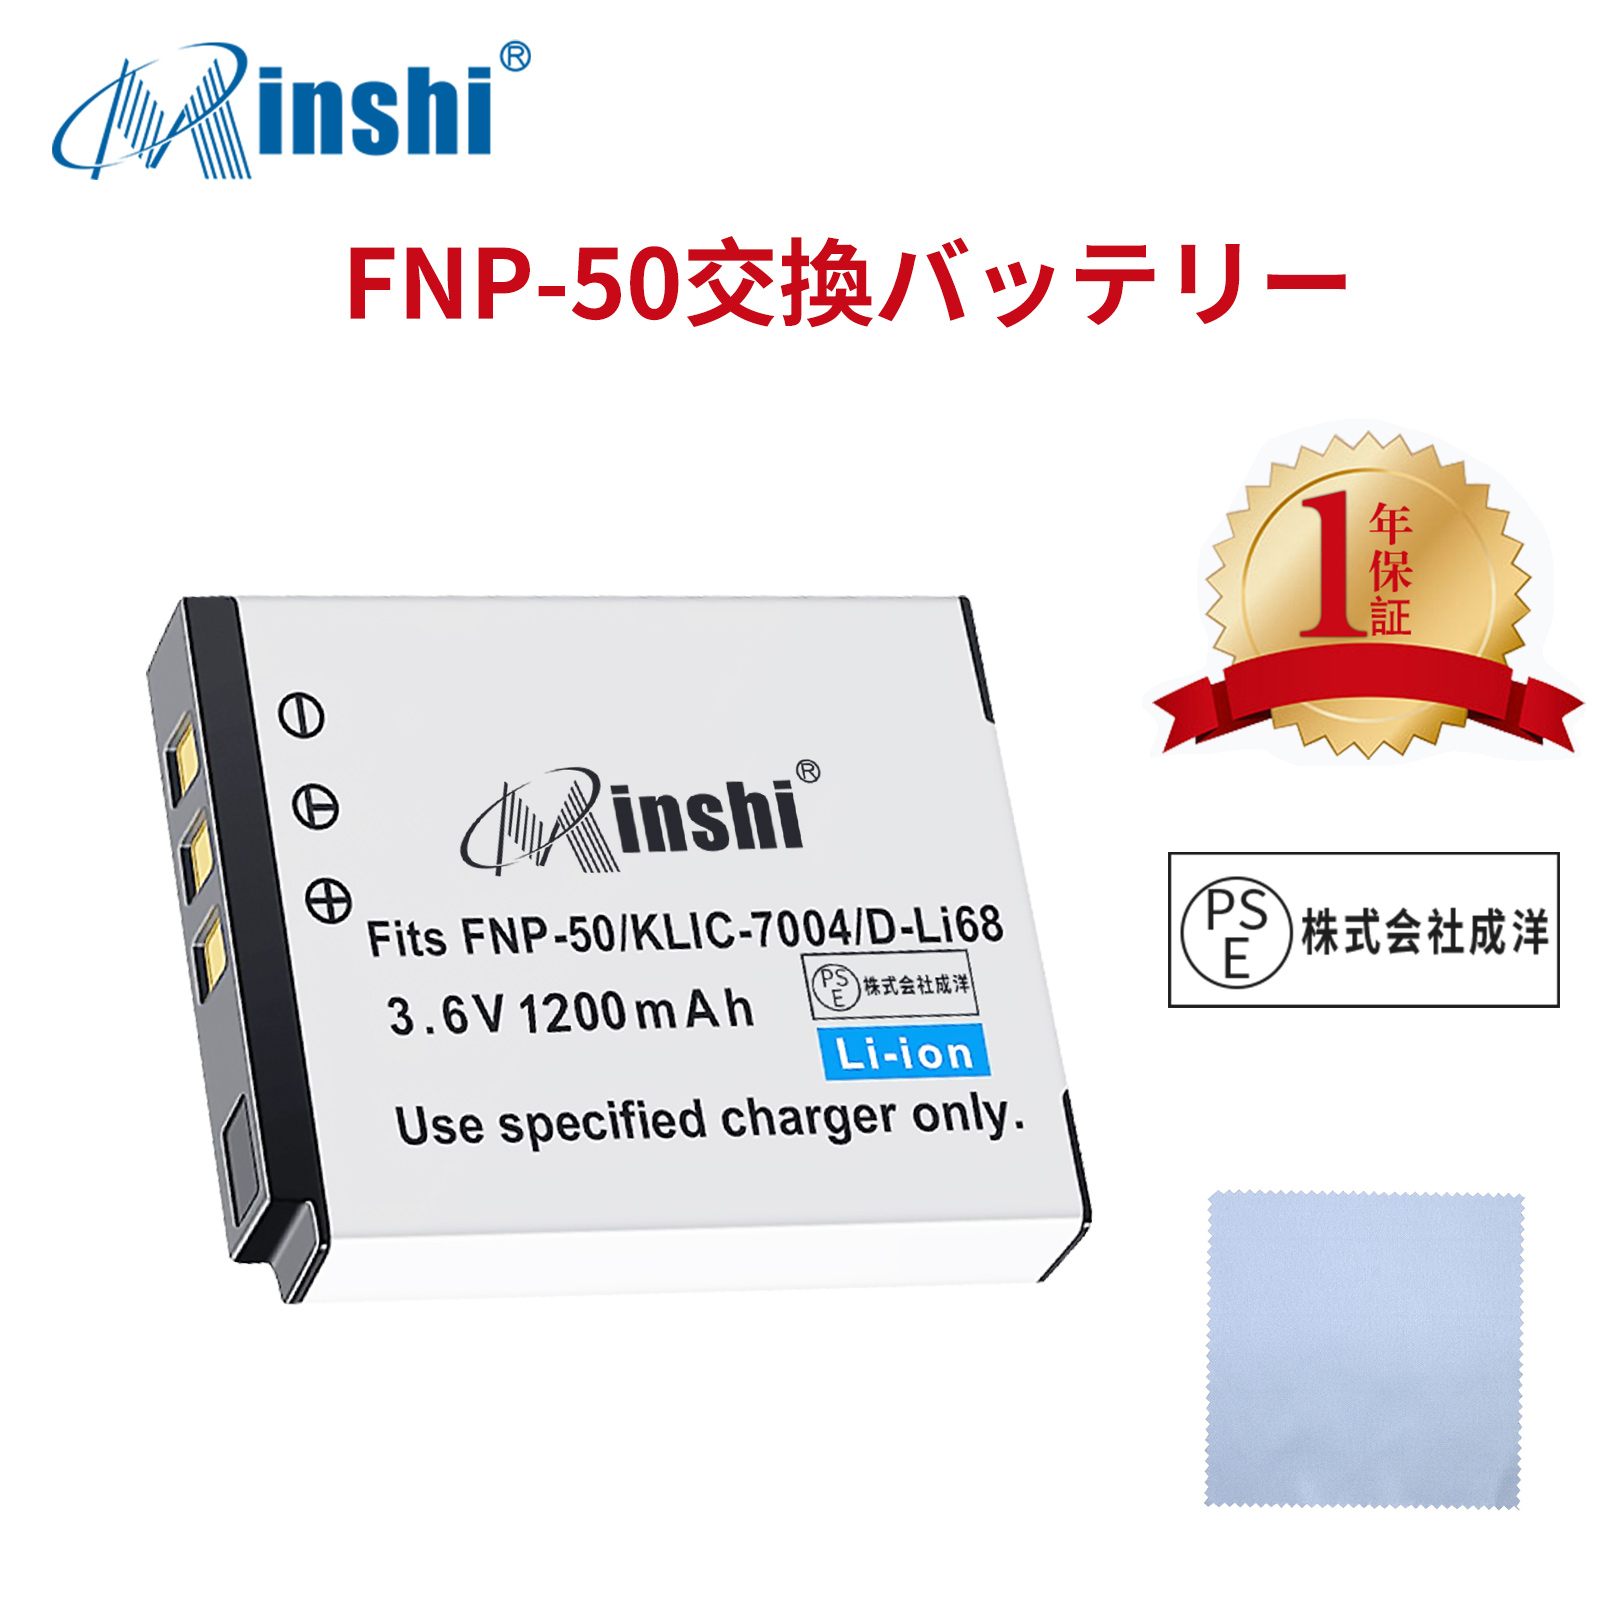 【クロス付き】minshi PENTAX Q 【1200mAh 3.6V】PSE認定済 高品質PENTAX D-LI68互換バッテリーPHB